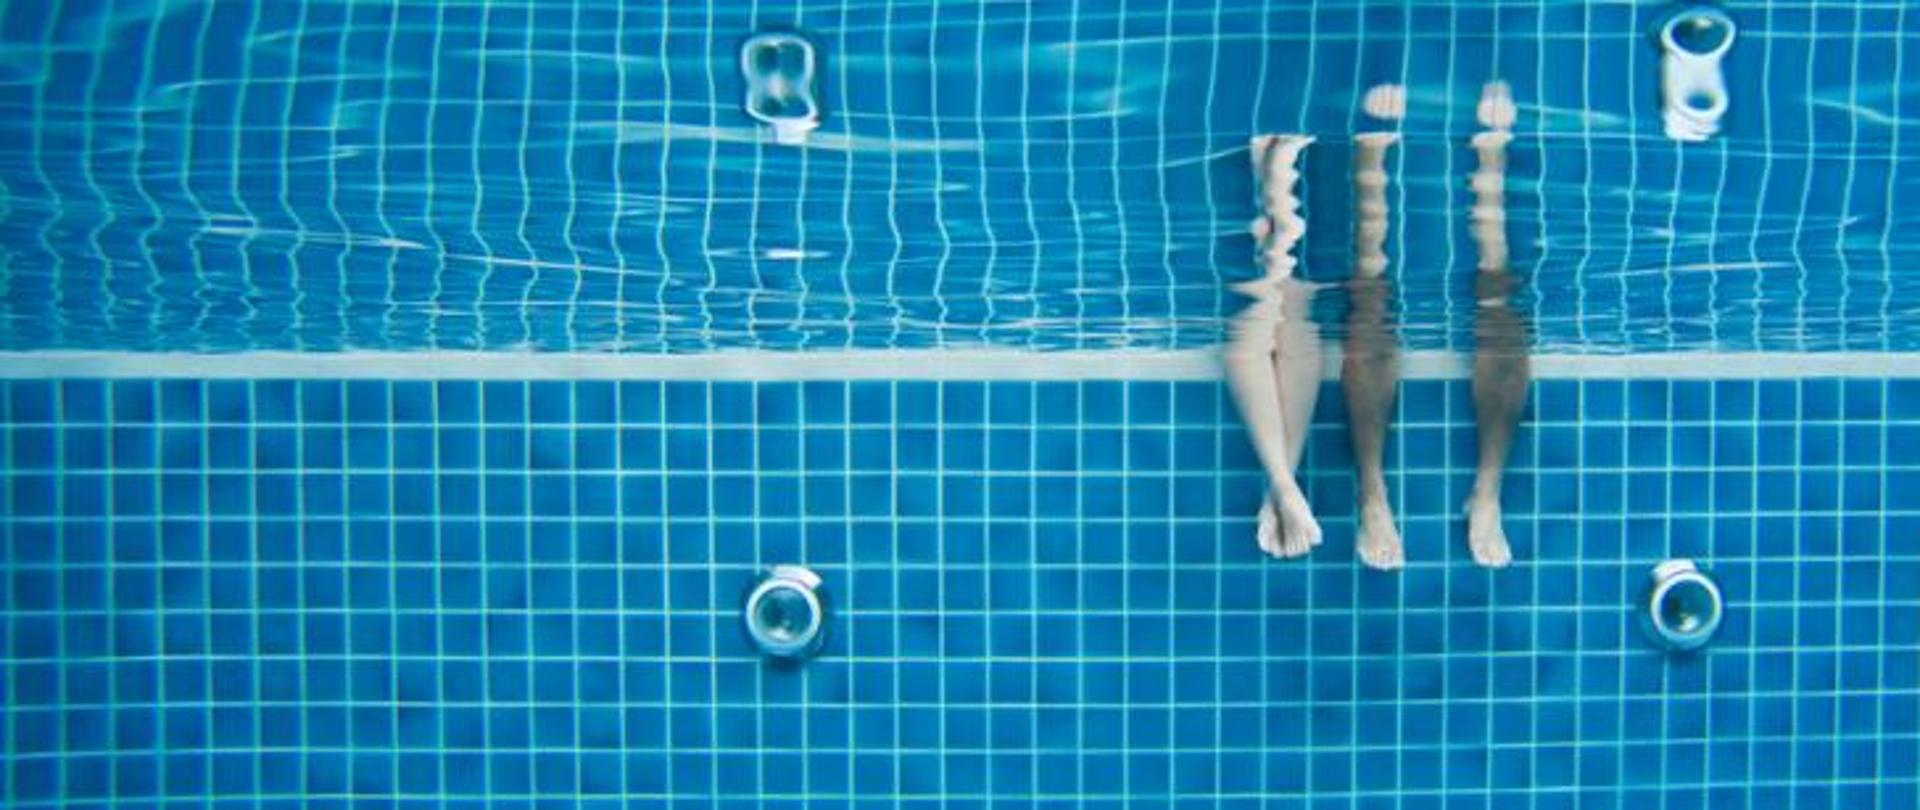 Widok basenu pod taflą wody. Po prawej stronie widać dwie pary nóg zanurzonych w wodzie.